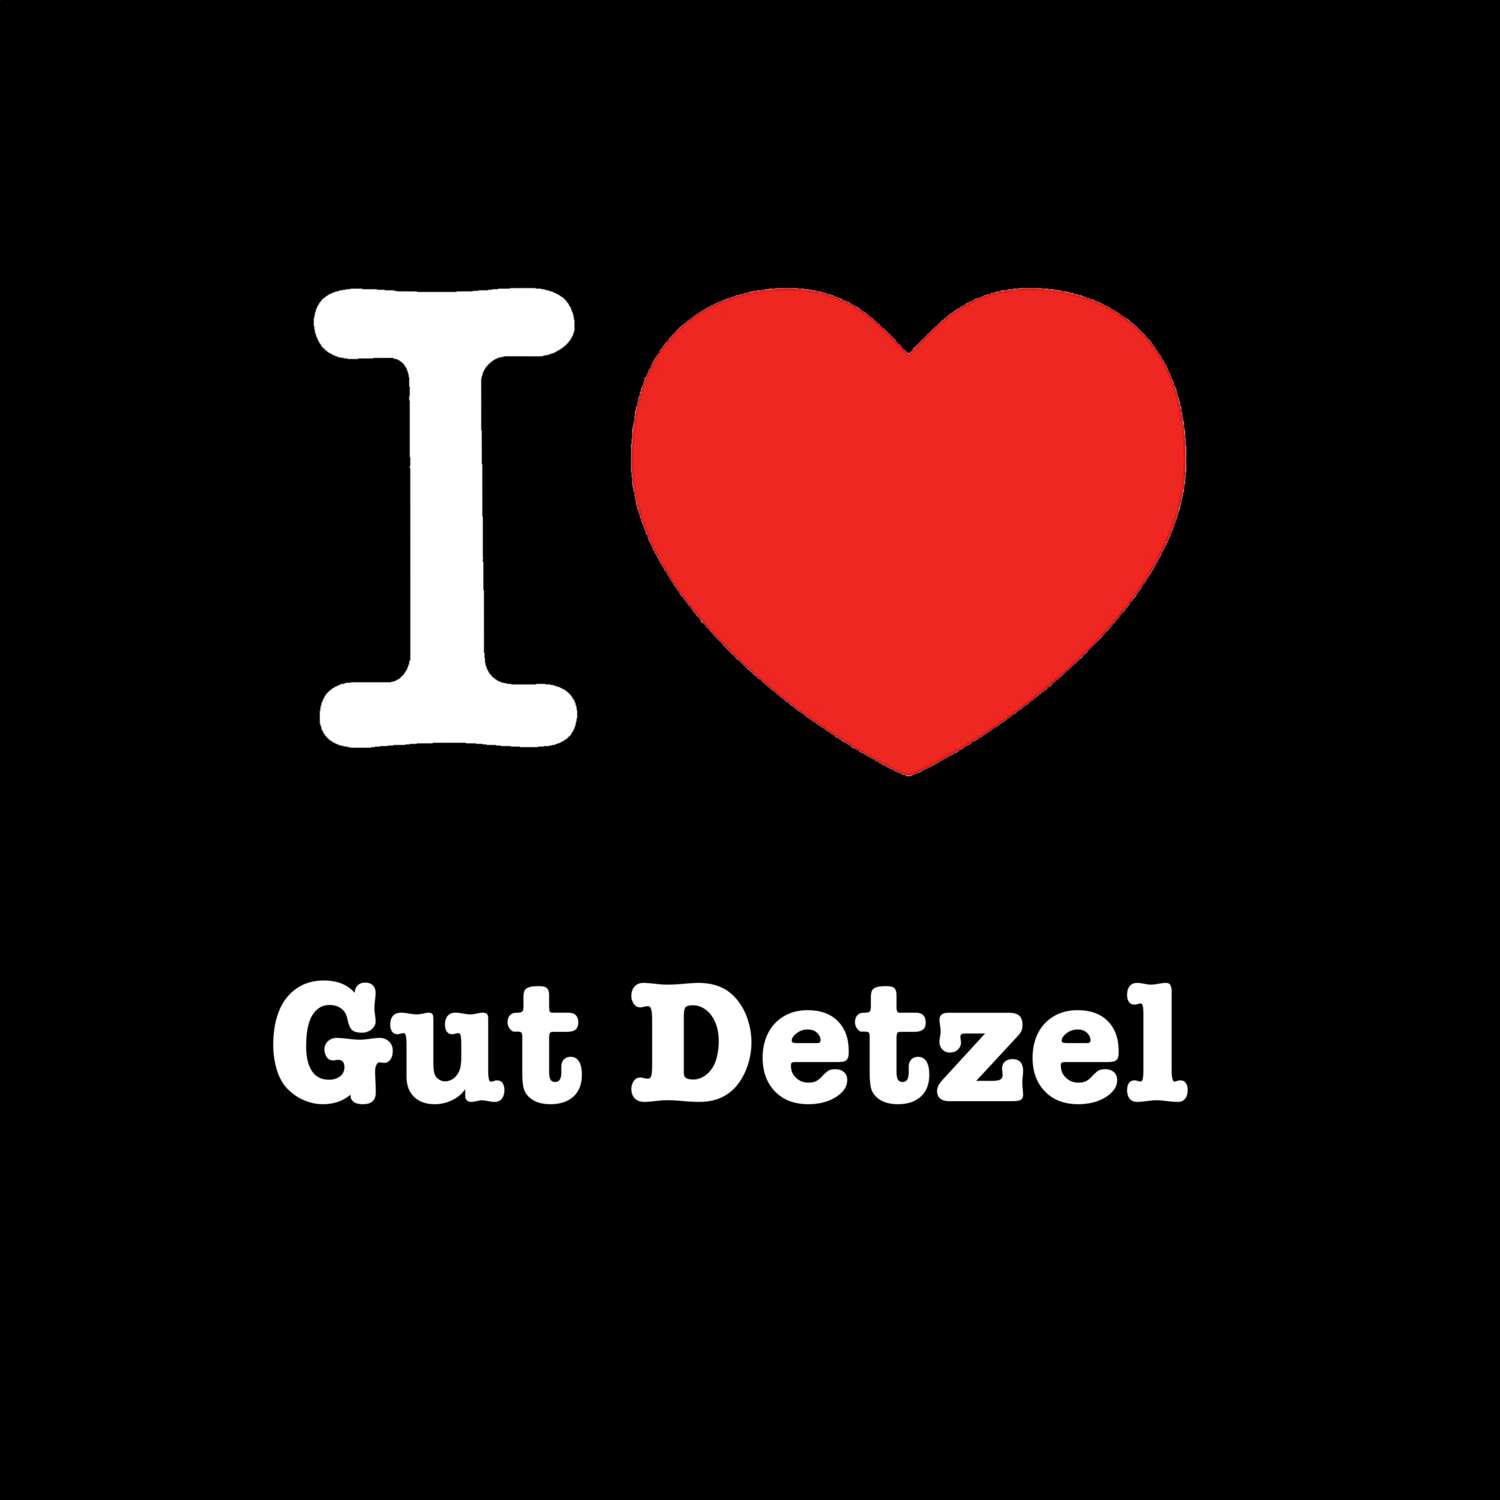 Gut Detzel T-Shirt »I love«